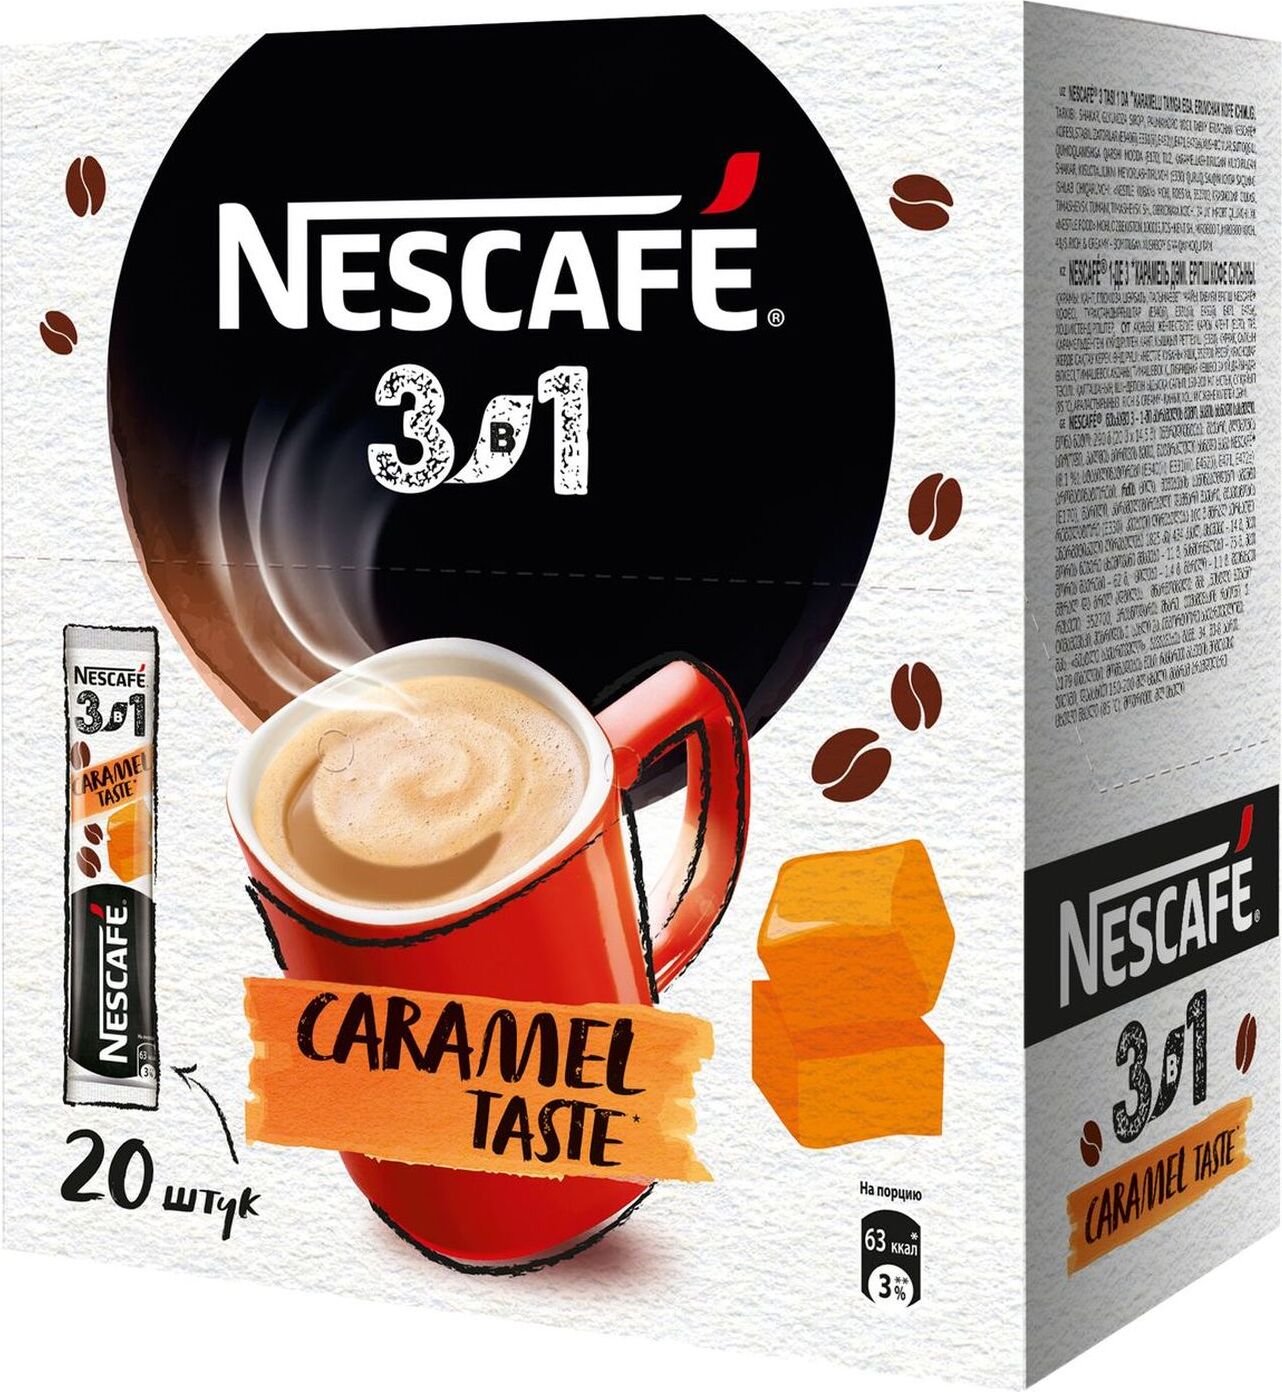 Nescafe 3в1. Кофе Нескафе 3 в 1 карамель. Кофе 3 в 1 Нескафе Карамельный. Кофе в пакетиках 3 в 1 Nescafe. Nescafe 3в1 карамель.